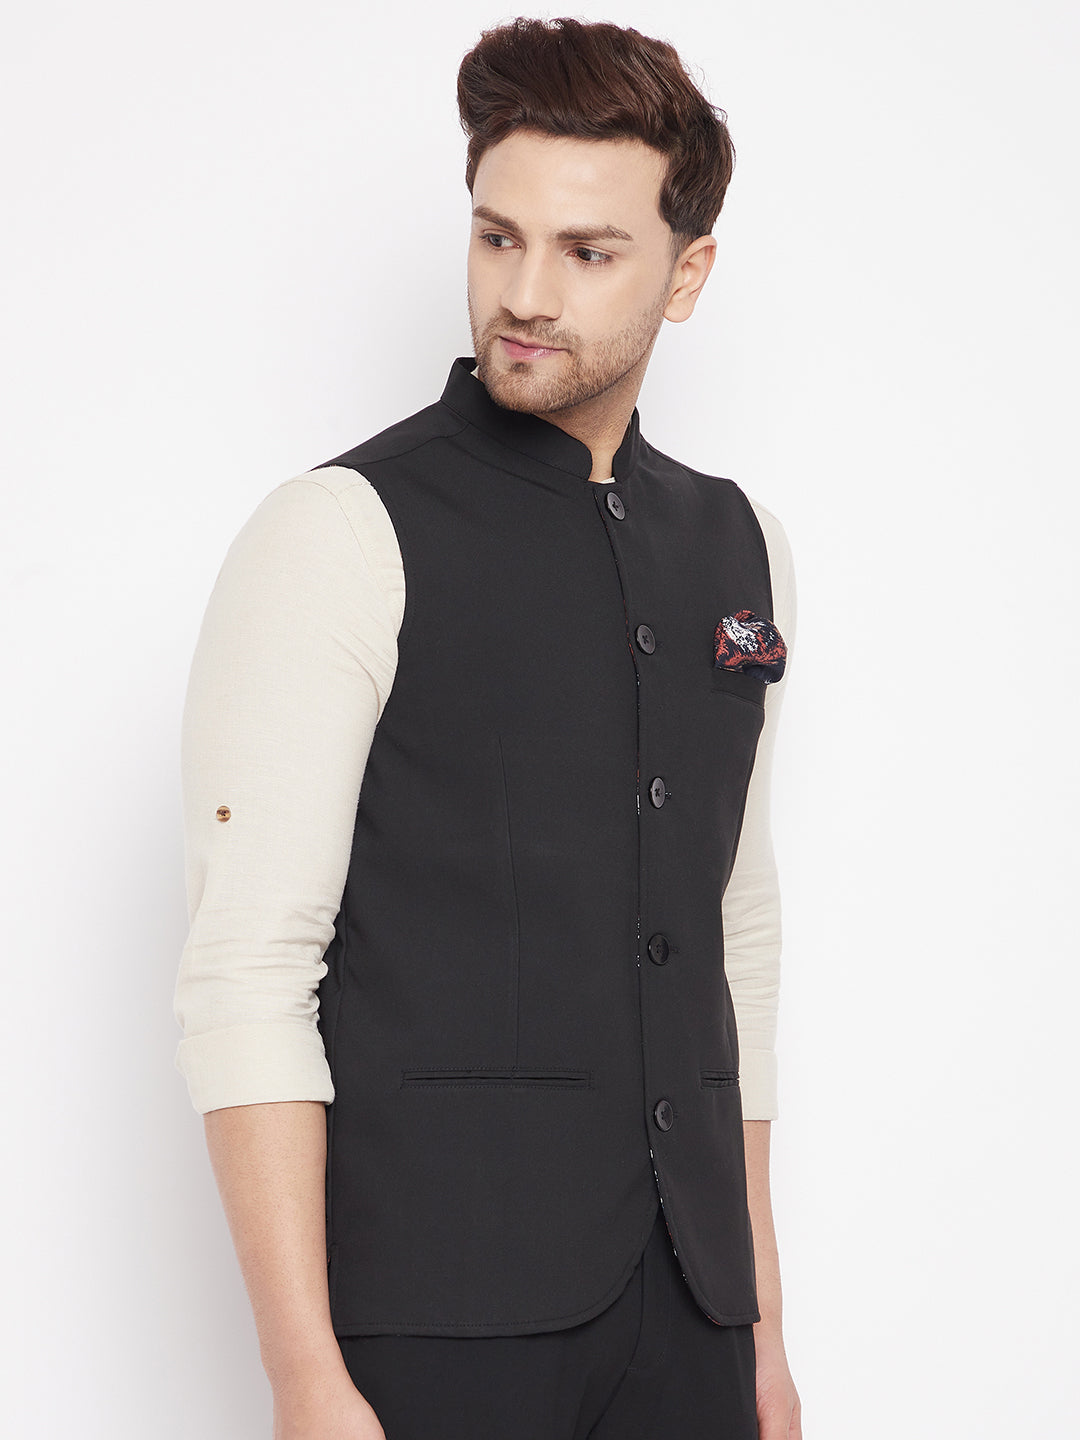 Men's Black Color Nehru Jacket-Contrast Lining-Inbuilt Pocket Square - Even Apparels